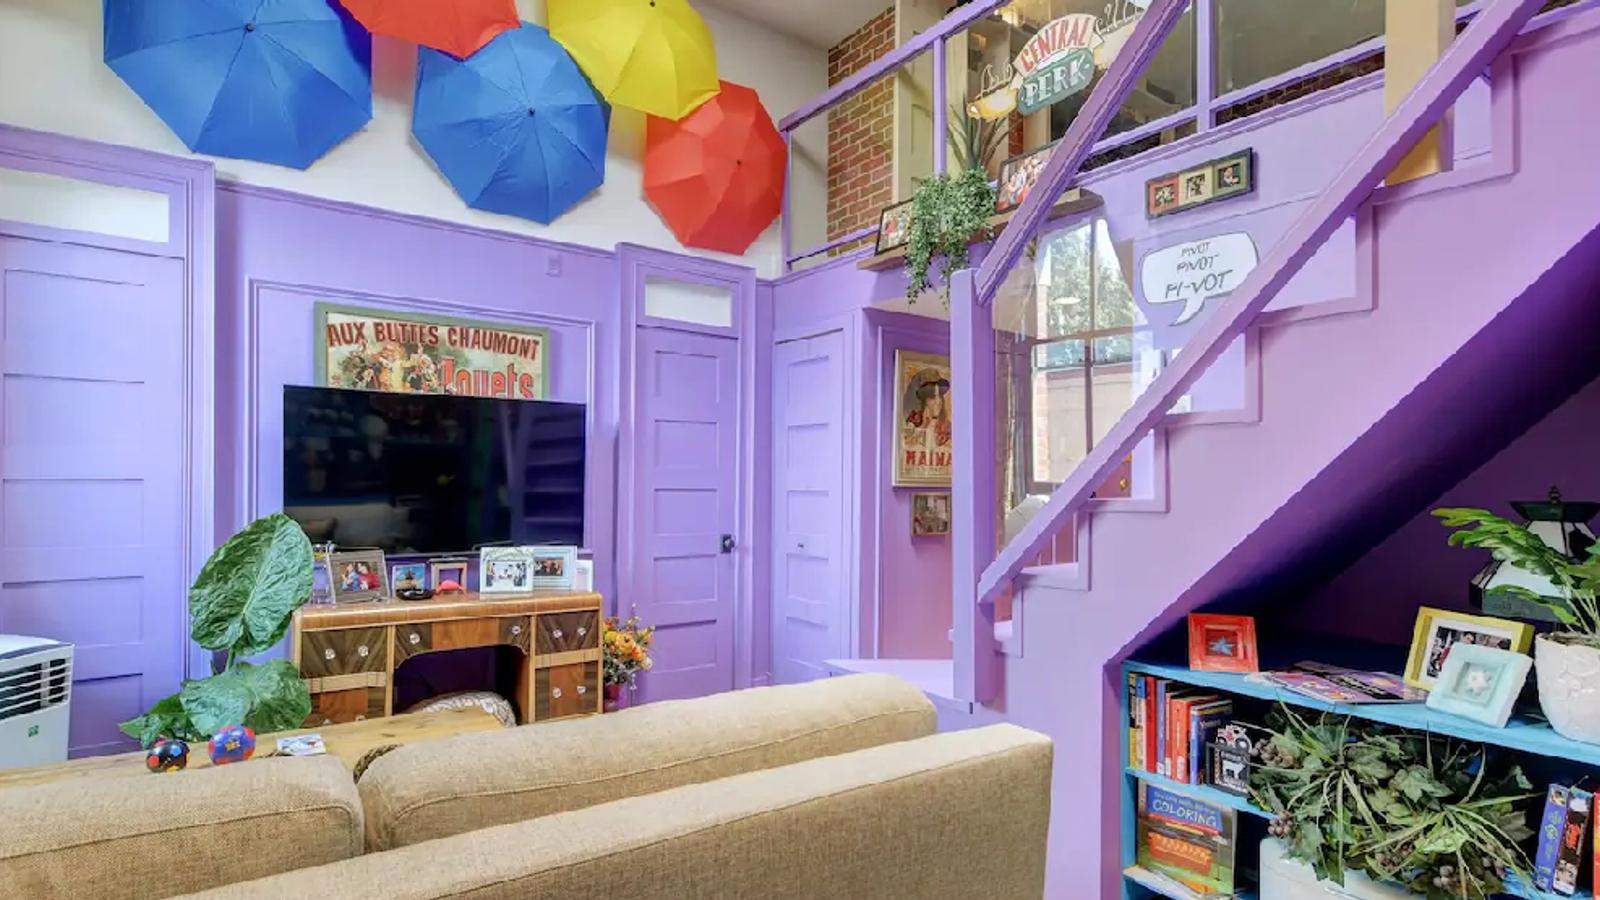 Cette location Airbnb plaira aux fans de la série Friends